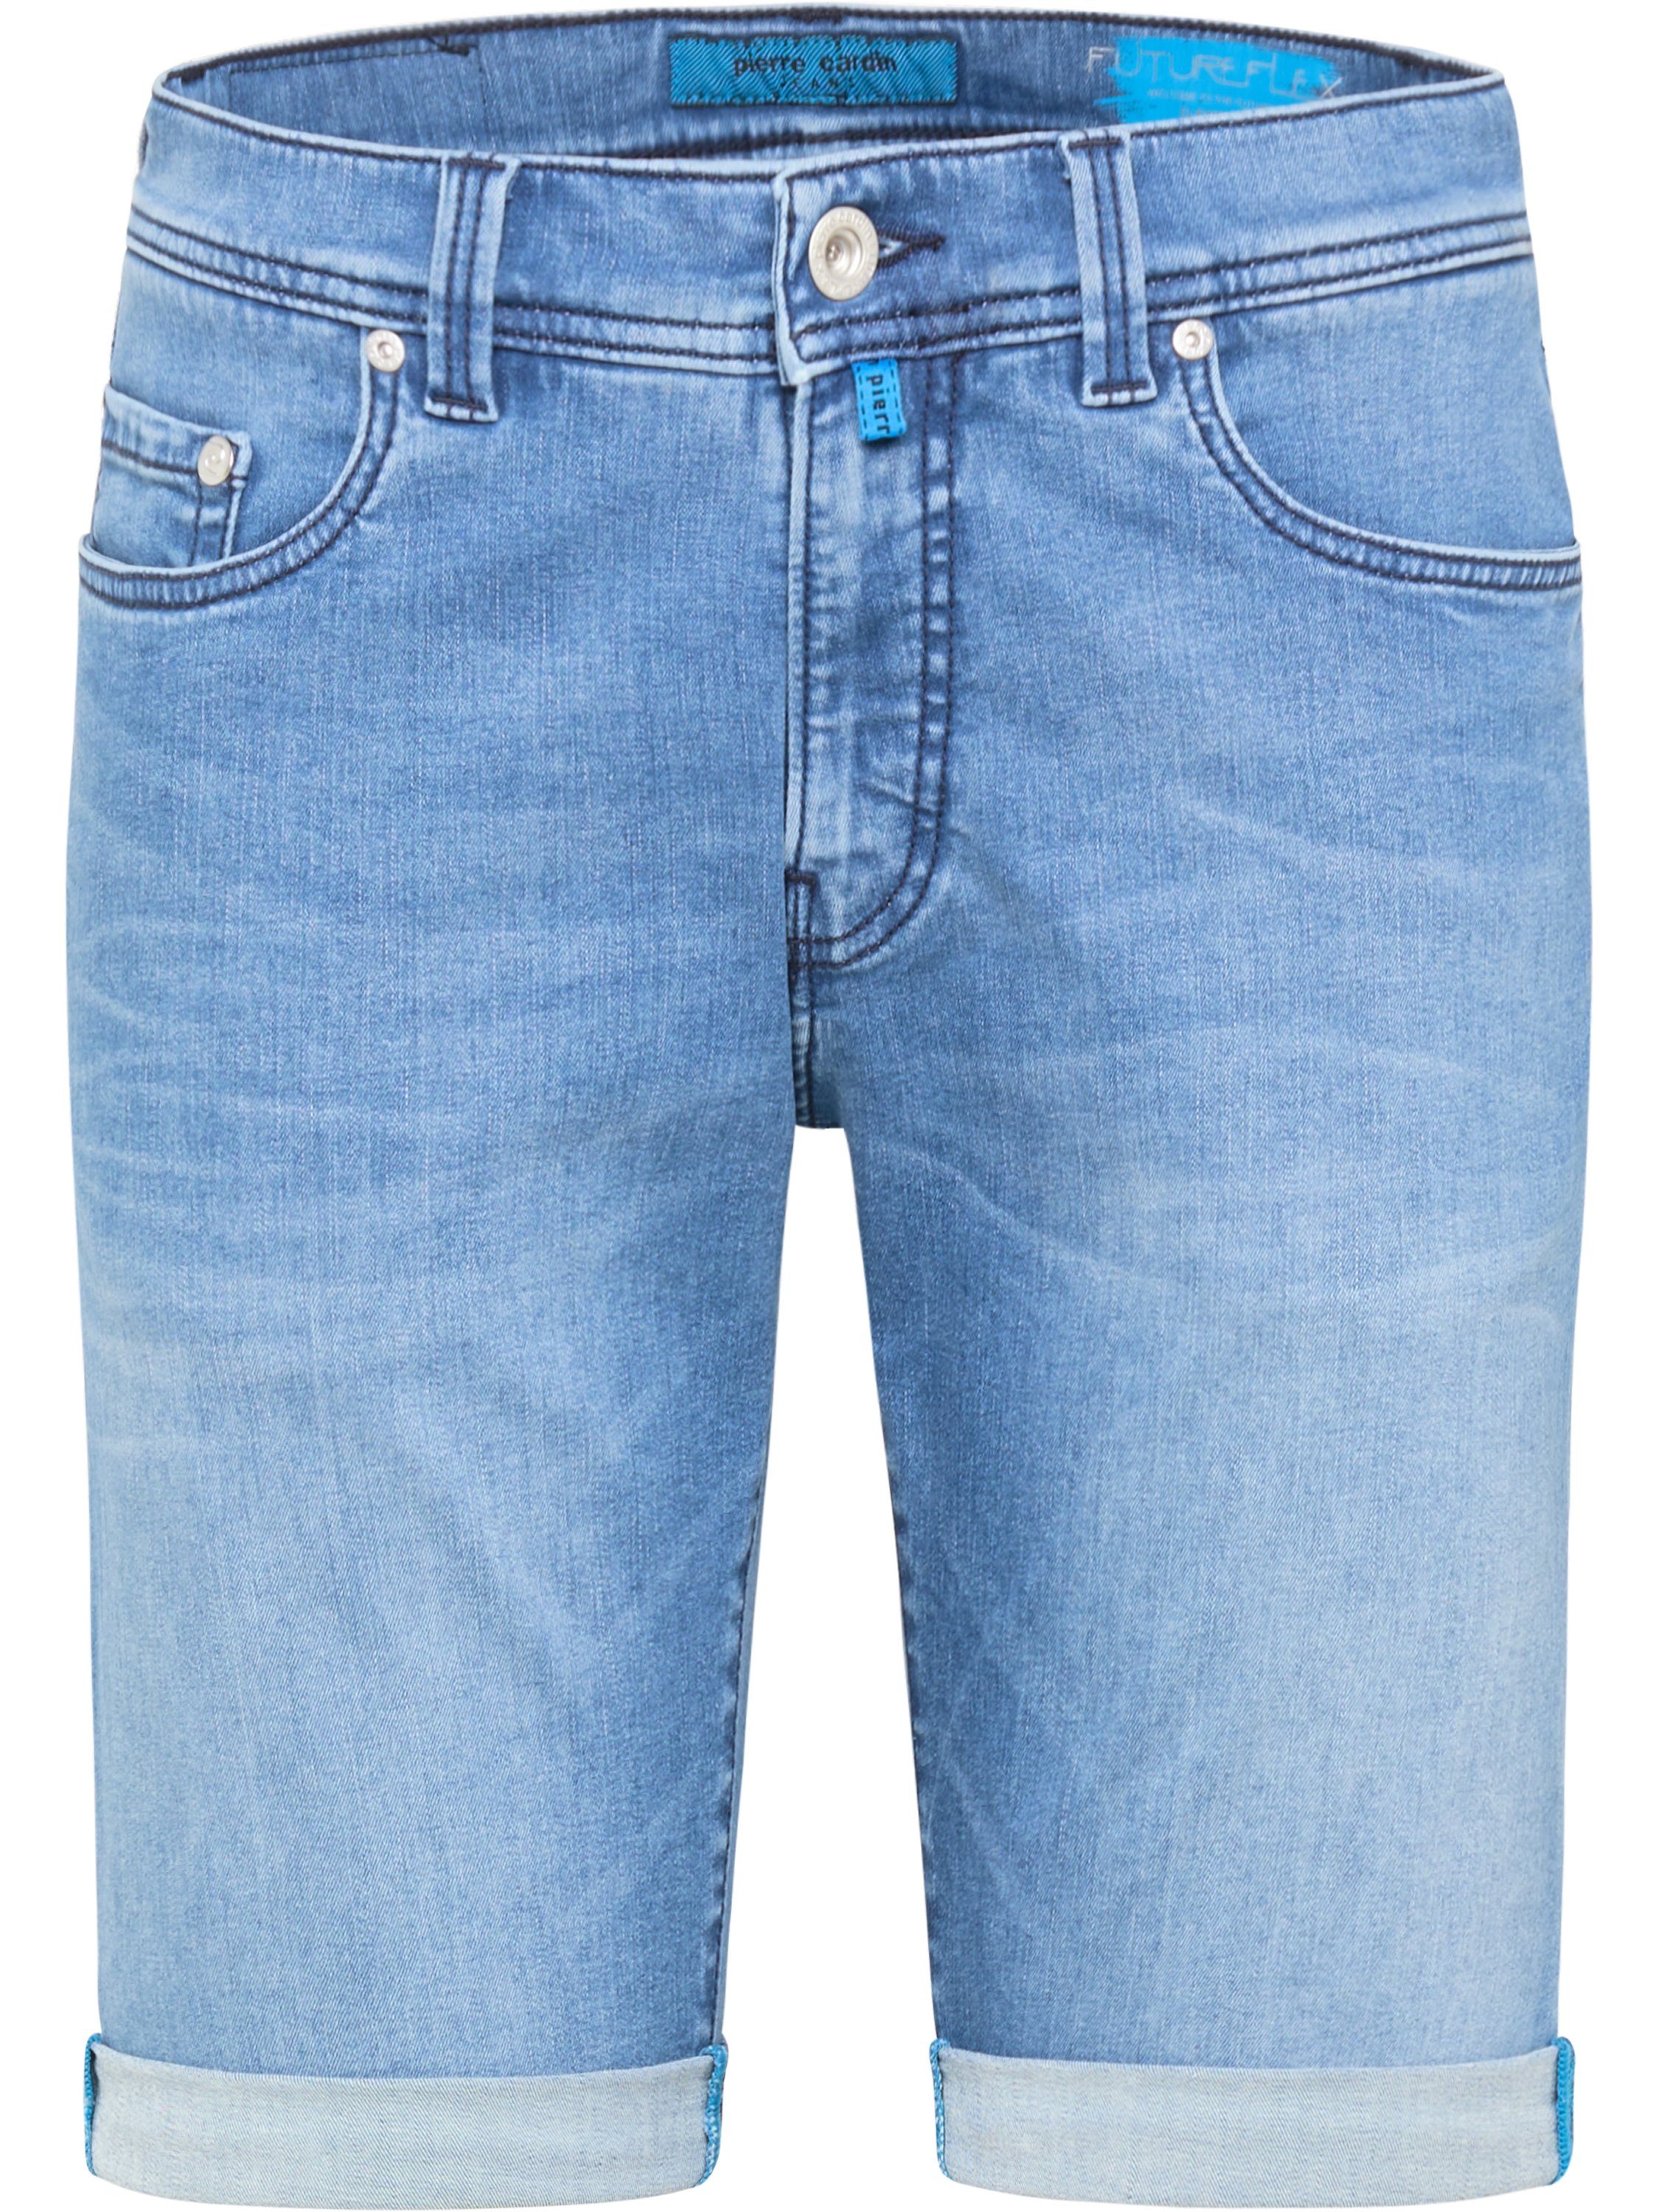 Pierre Cardin 5-Pocket-Jeans PIERRE CARDIN LYON FUTUREFLEX SHORTS mid blue stone 3852 8860.06 -